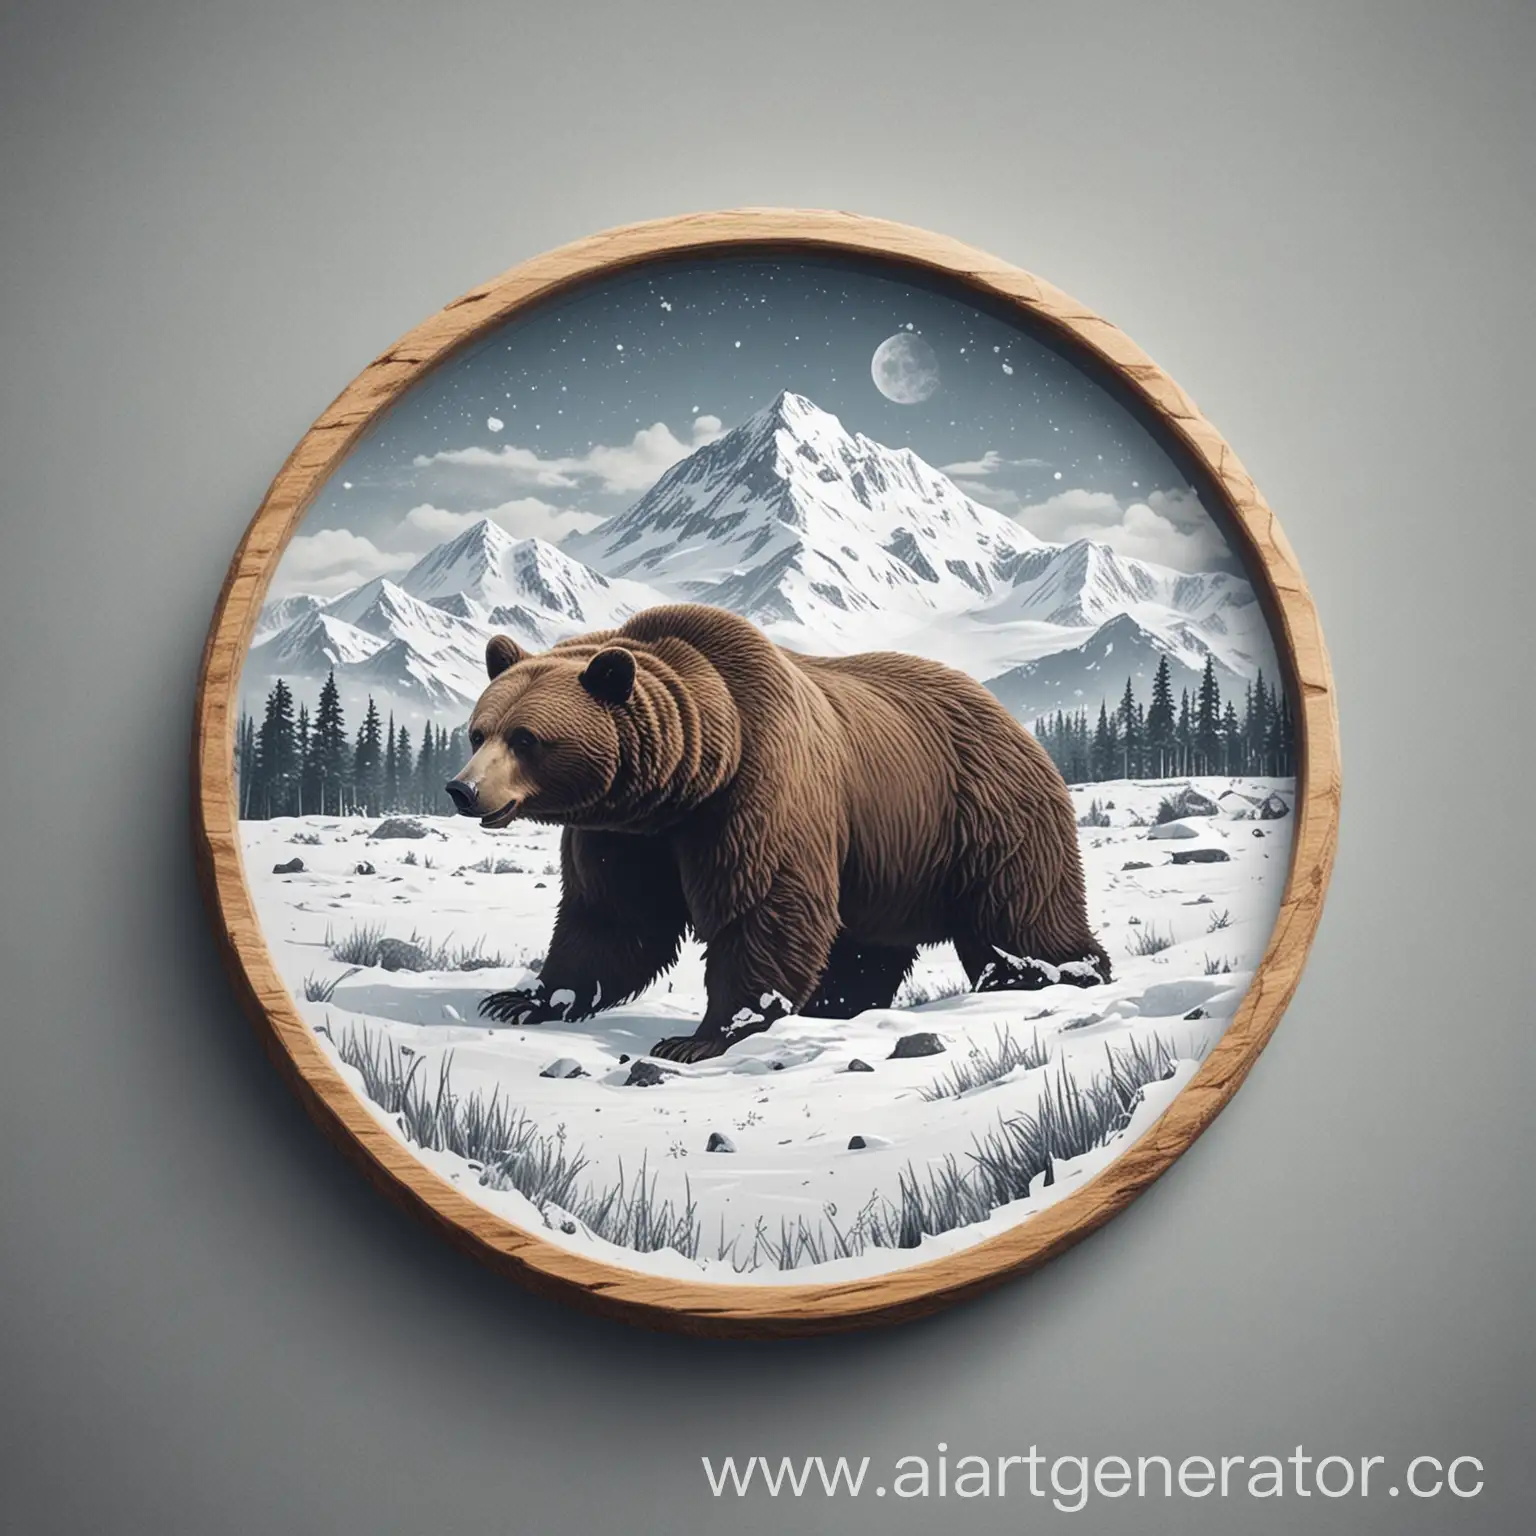 сделай 2D круглое лого для проекта. В нём должен быть вдалеке пейзаж с медведем в снежном поле без надписей